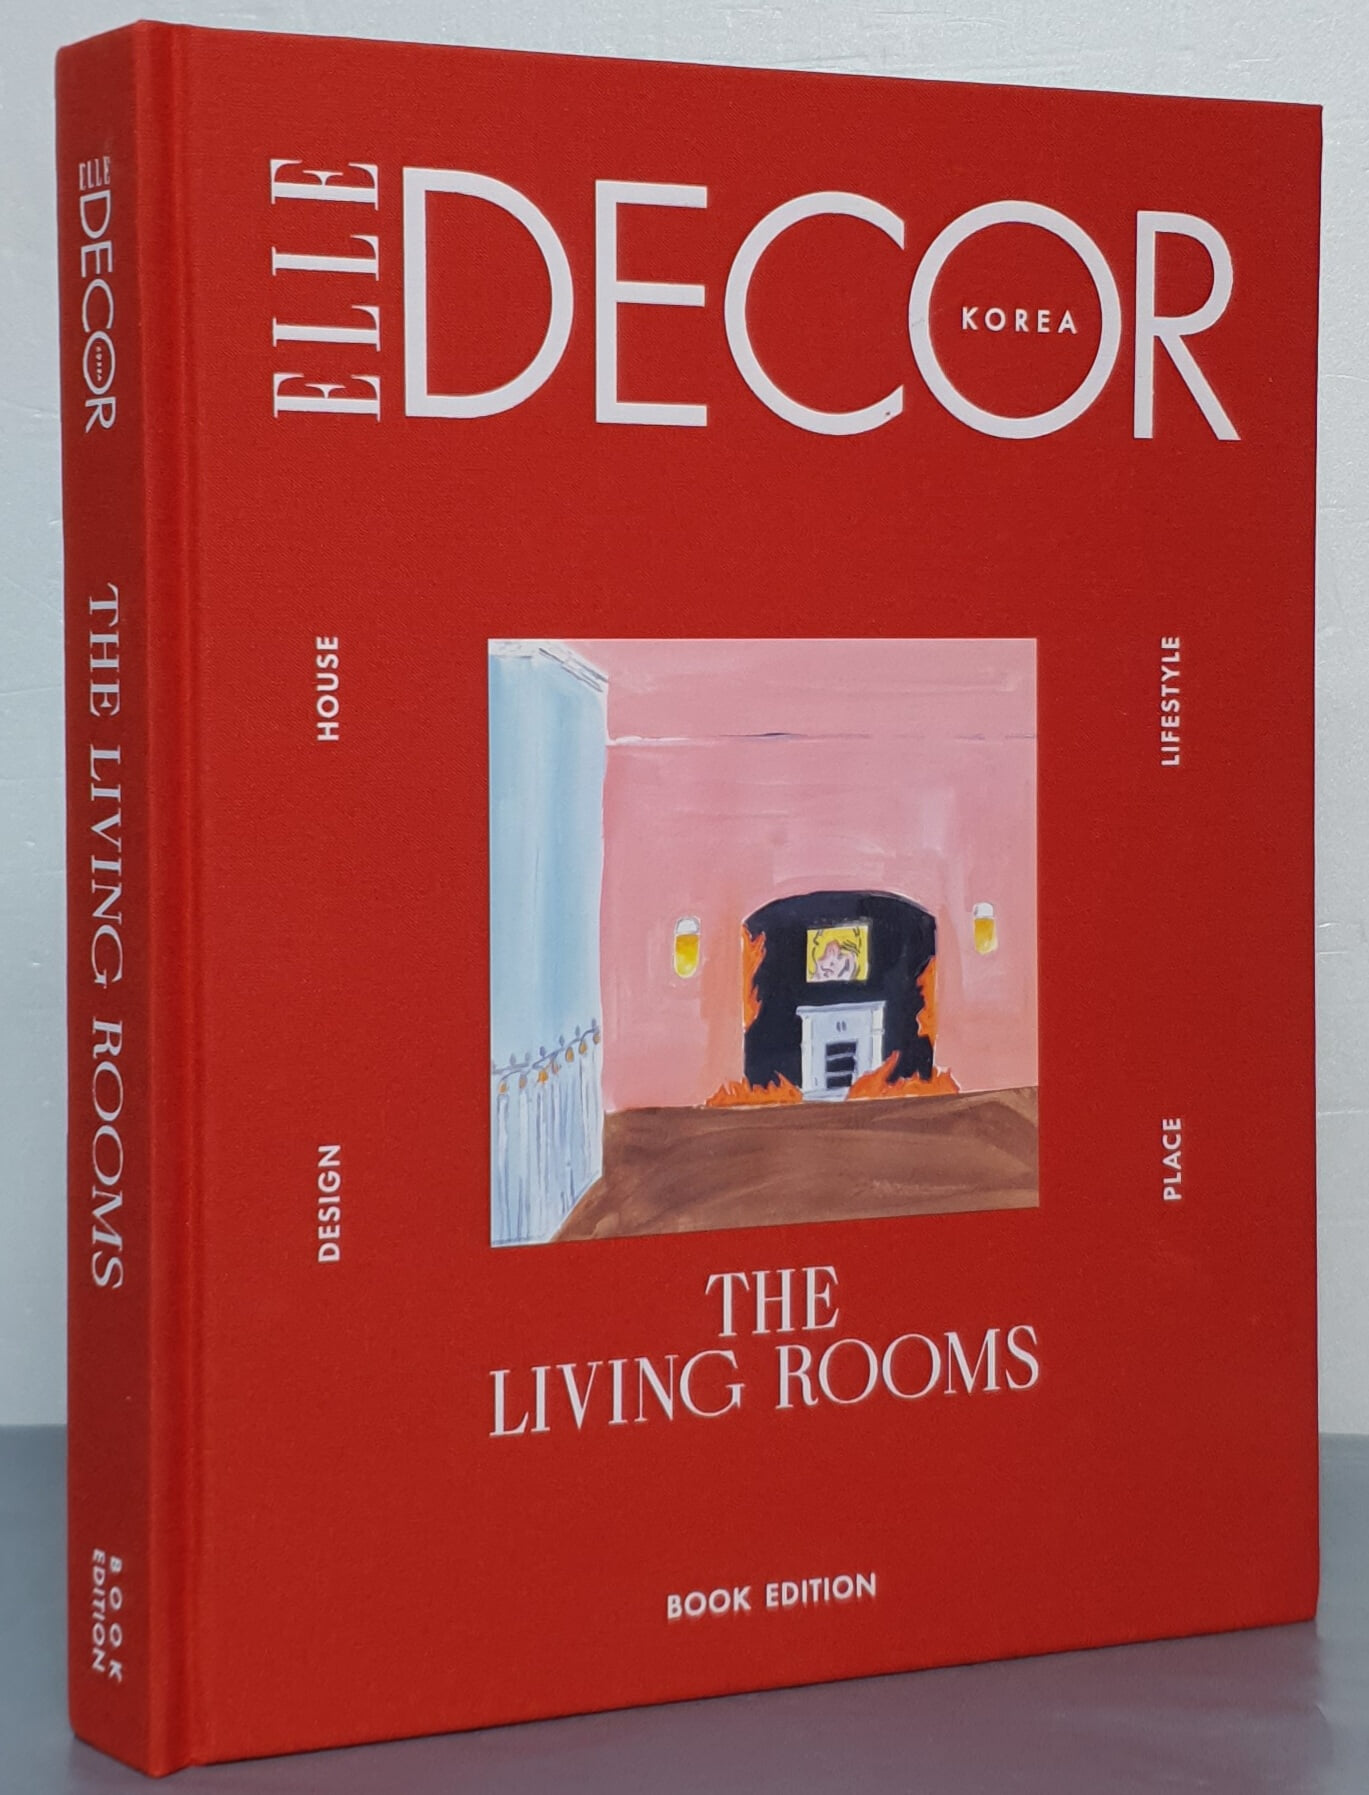 엘르 데코 코리아 북 에디션 Elle Decor Korea Book Edition : THE LIVING ROOMS